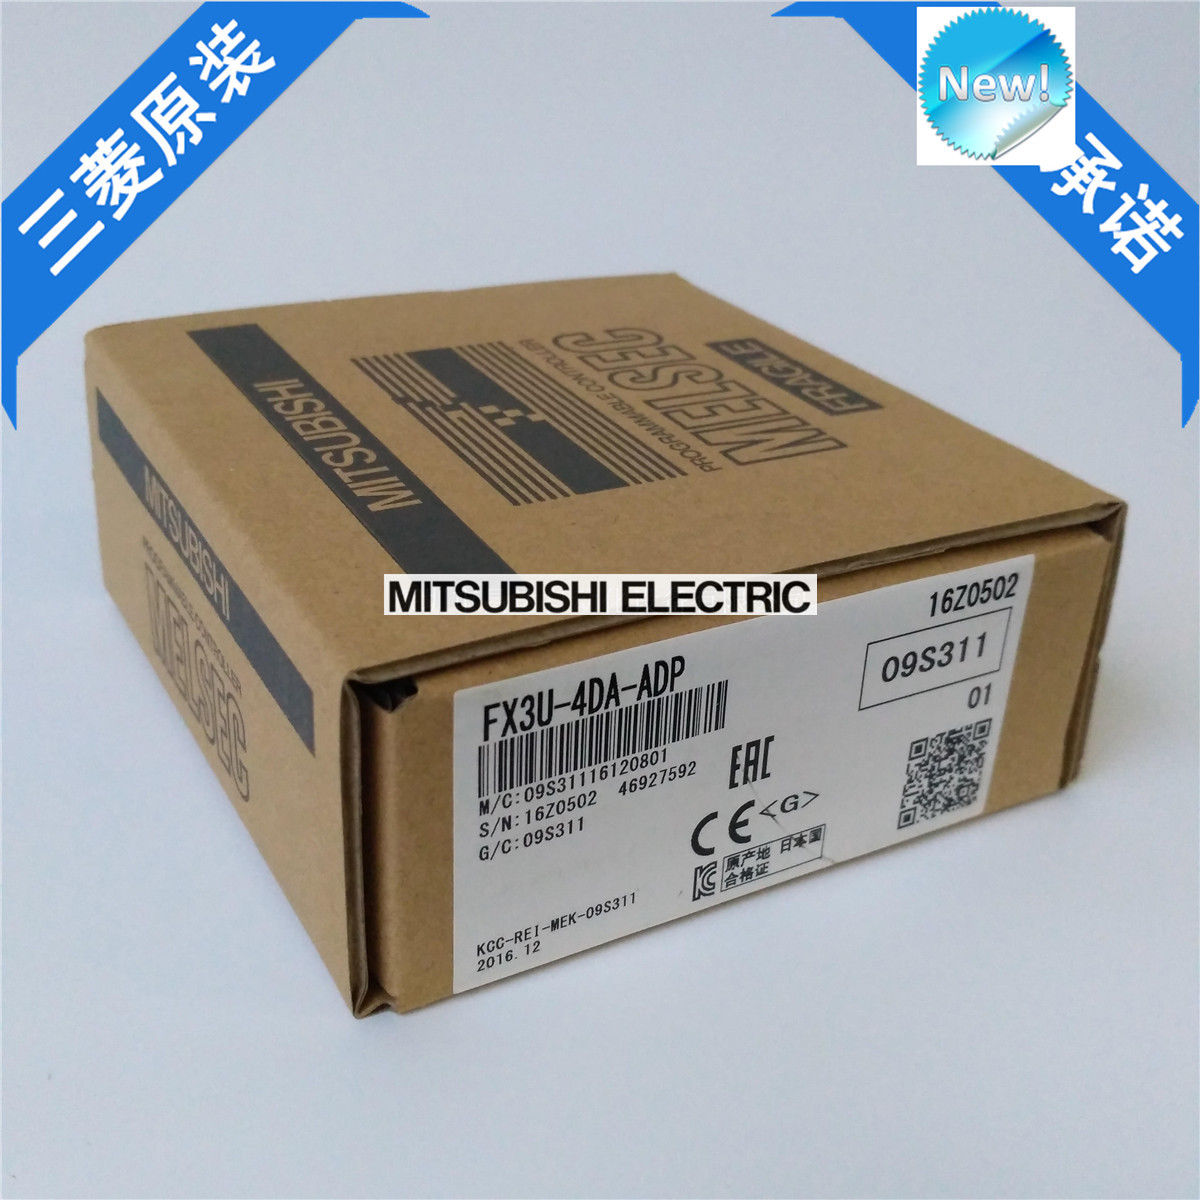 Brand New Mitsubishi PLC FX3U-4DA-ADP In Box FX3U4DAADP - Click Image to Close